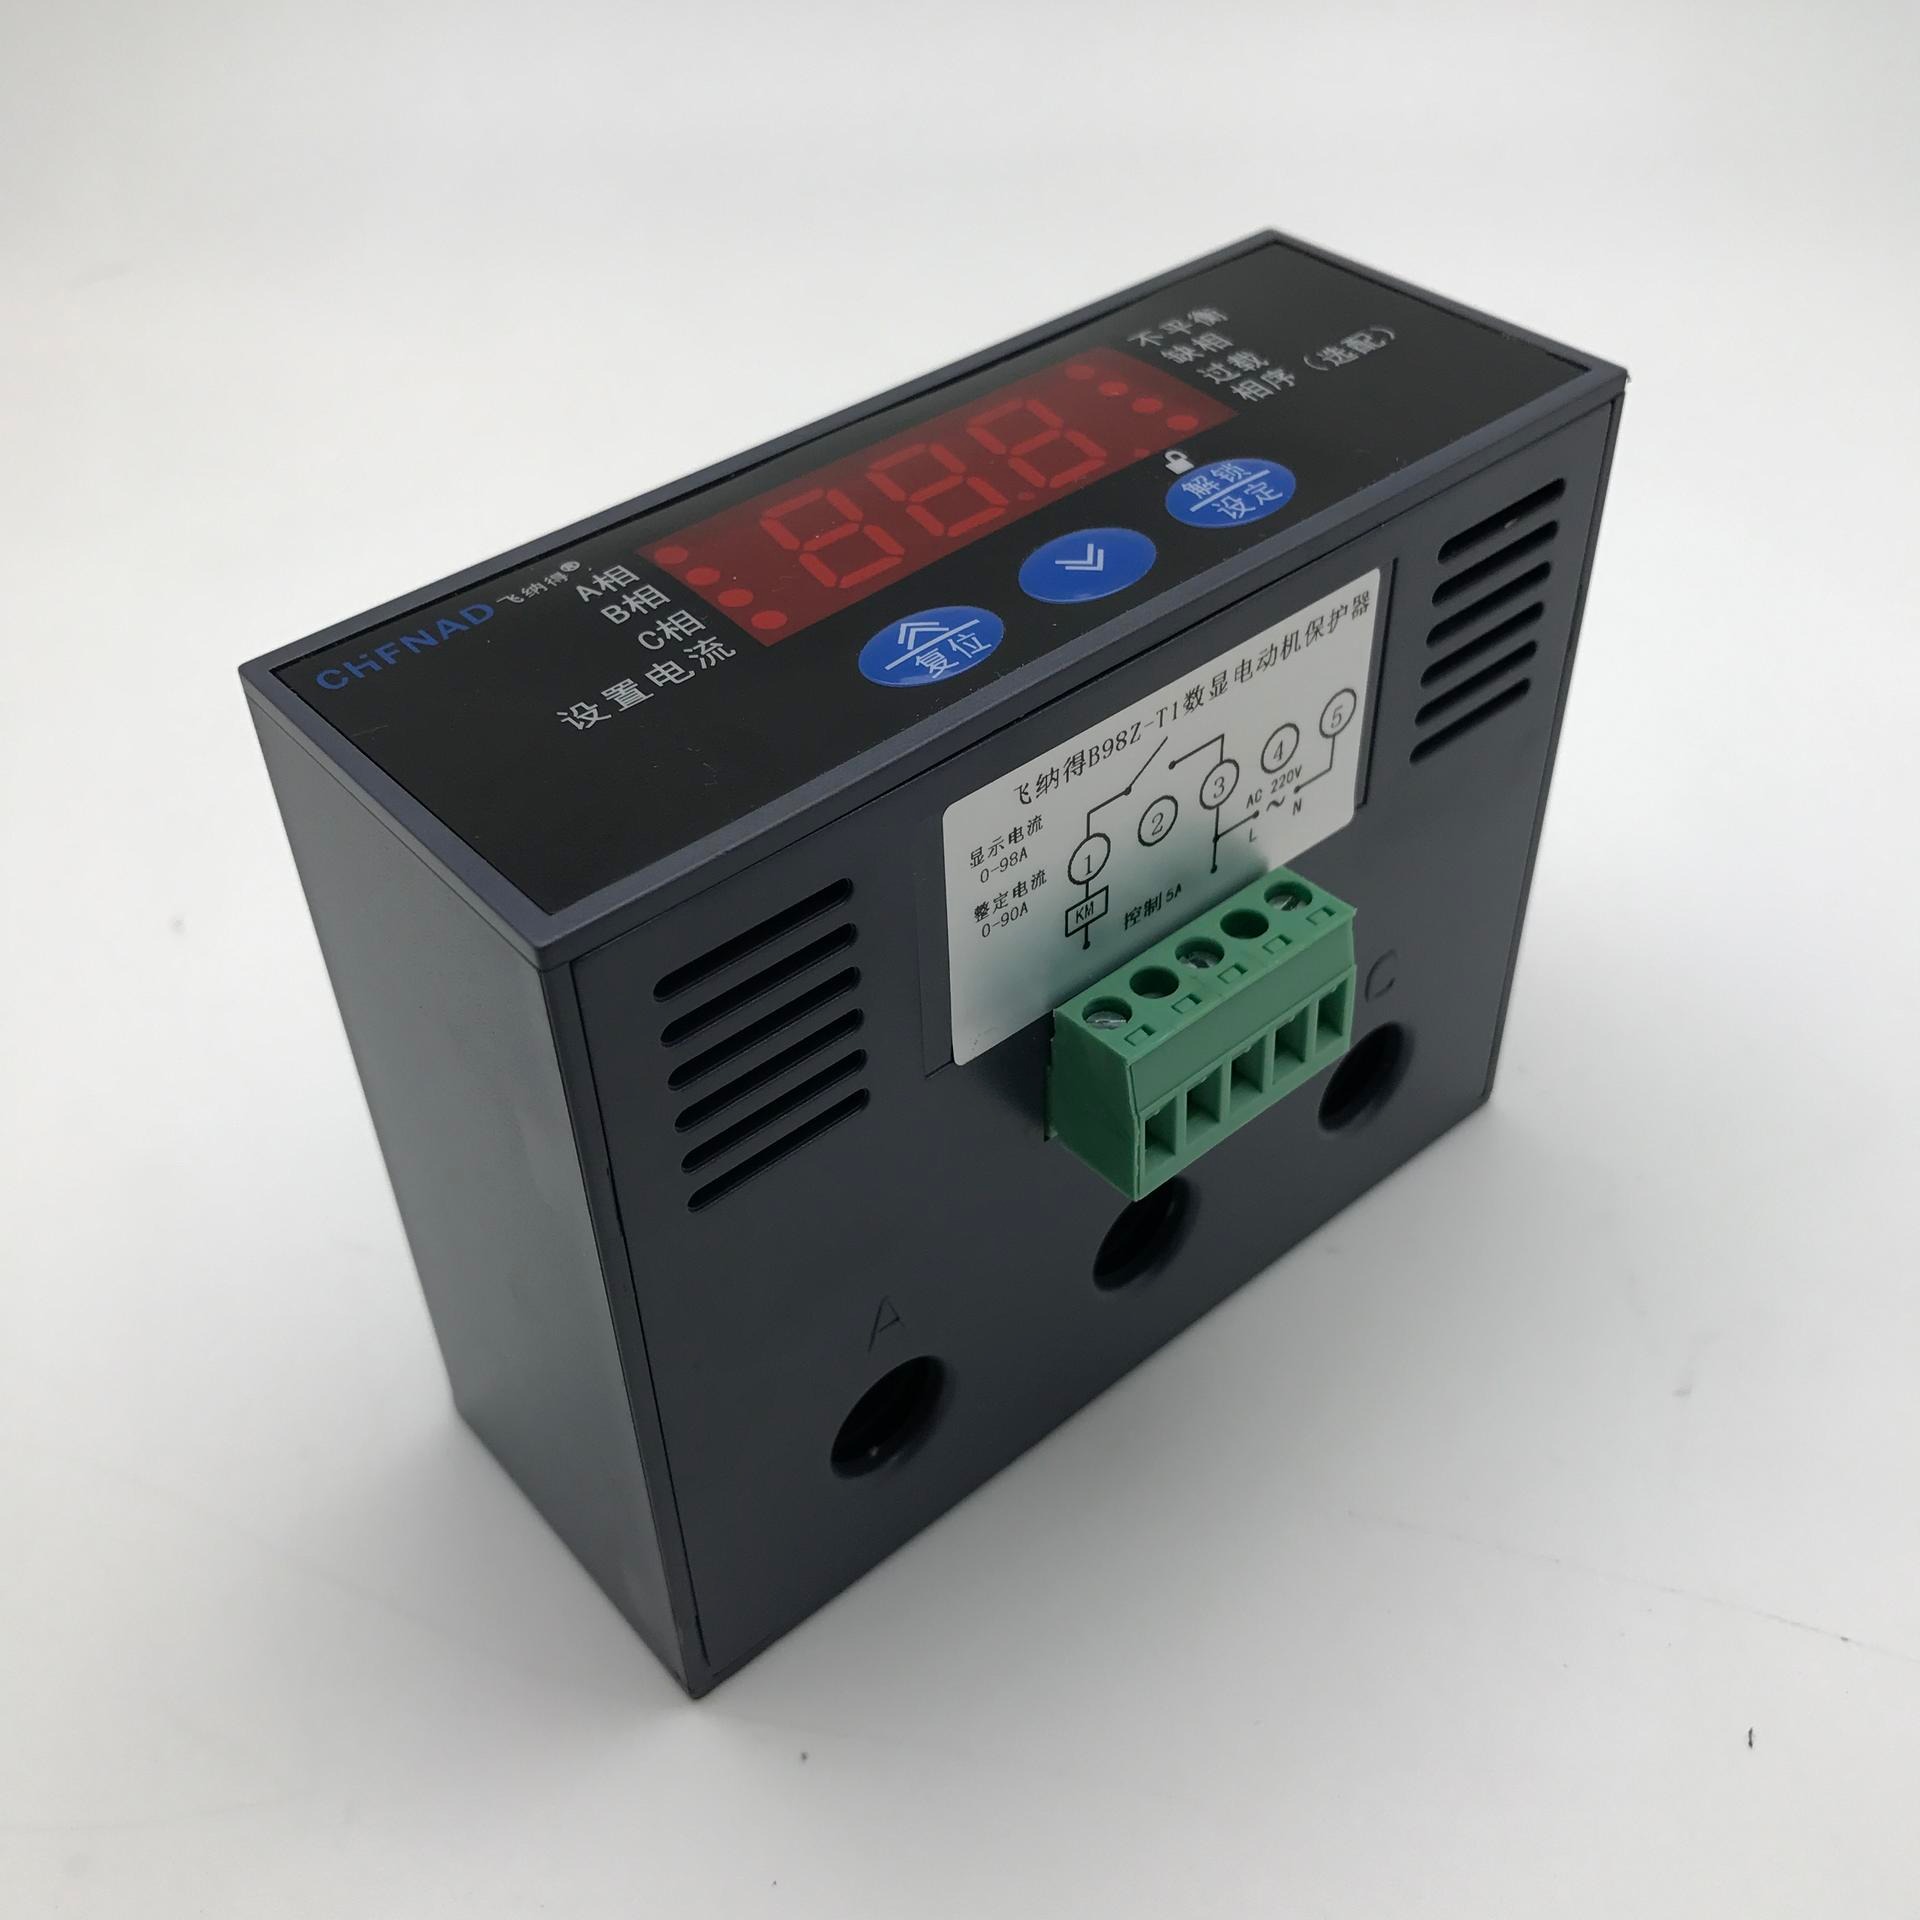 温度控制器 温控器STC-9200图片